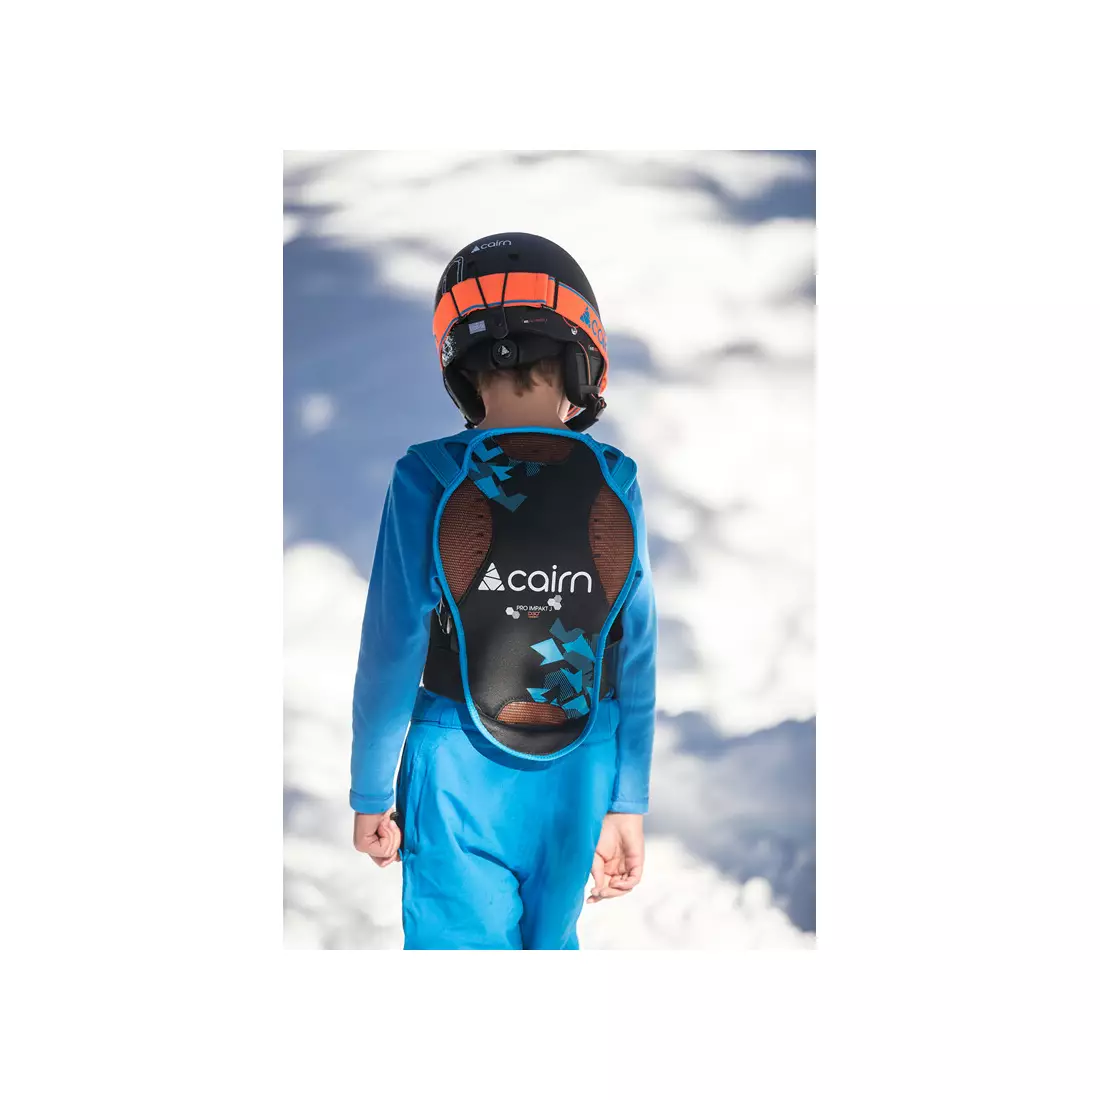 CAIRN PRO IMPAKT JR D3O gyerek sí / snowboard hátvédő, fekete és kék